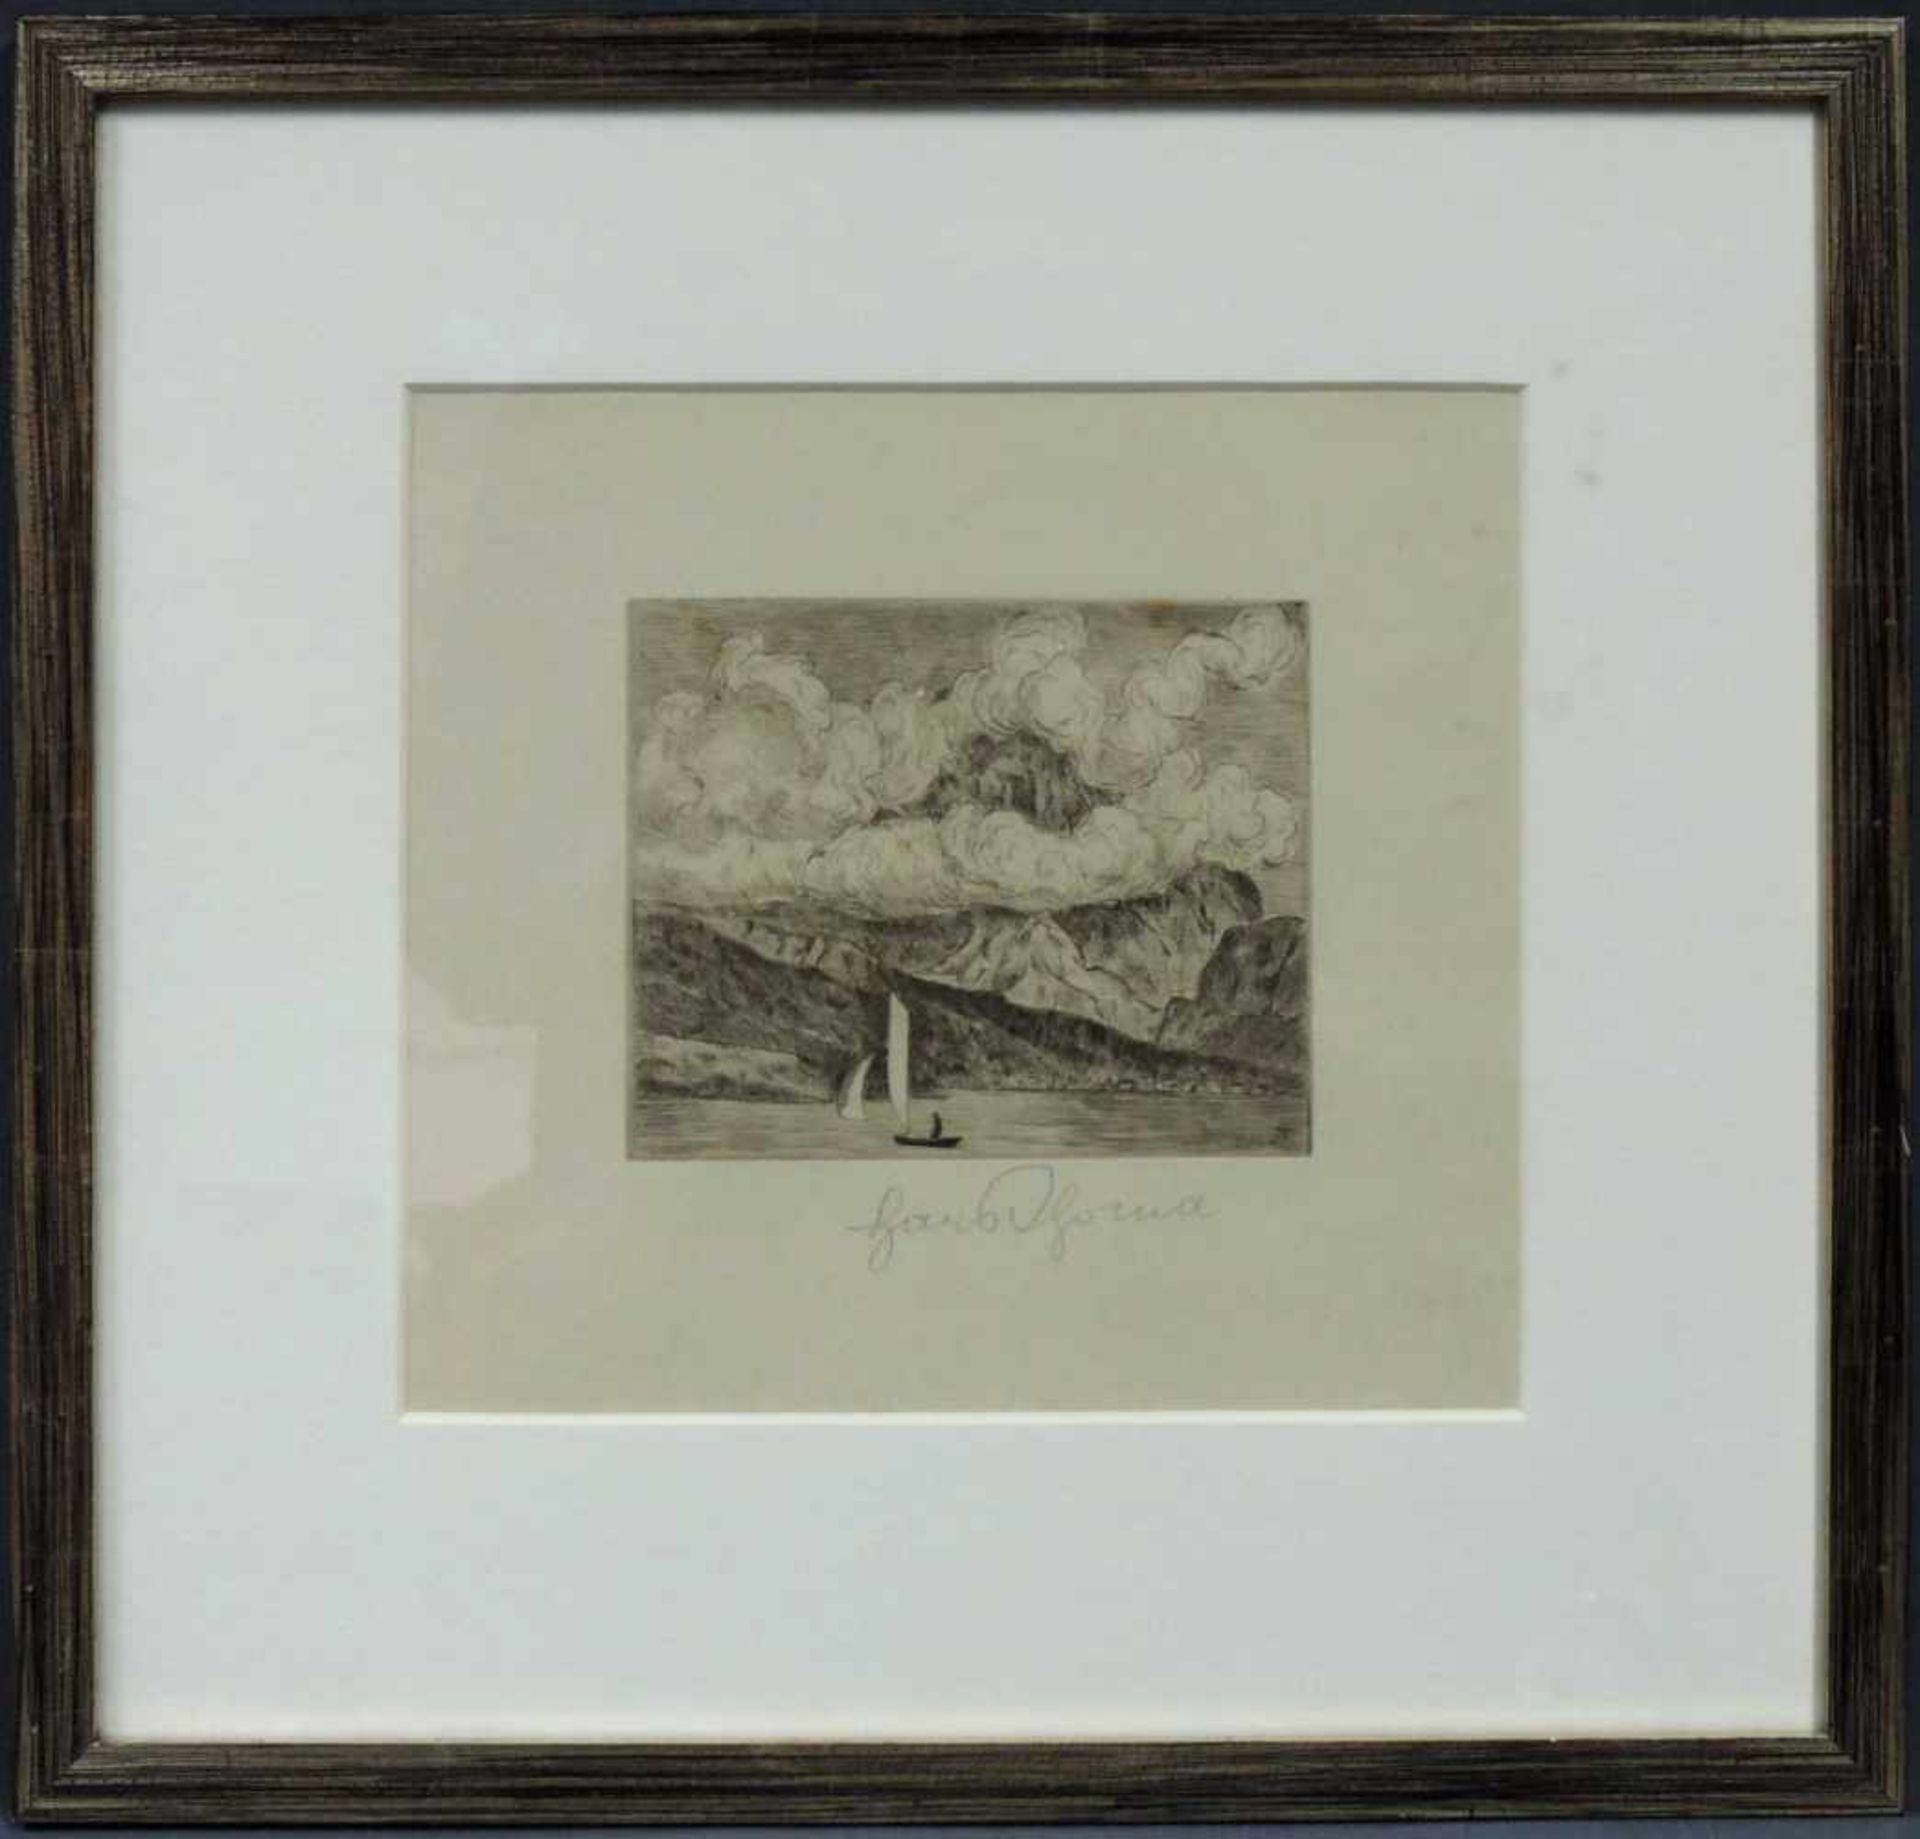 Hans THOMA (1839 - 1924). Bergsee (1917). Grafik Multiple. Radierung. Größe 13,2 cm x 16,2 cm. - Bild 2 aus 5